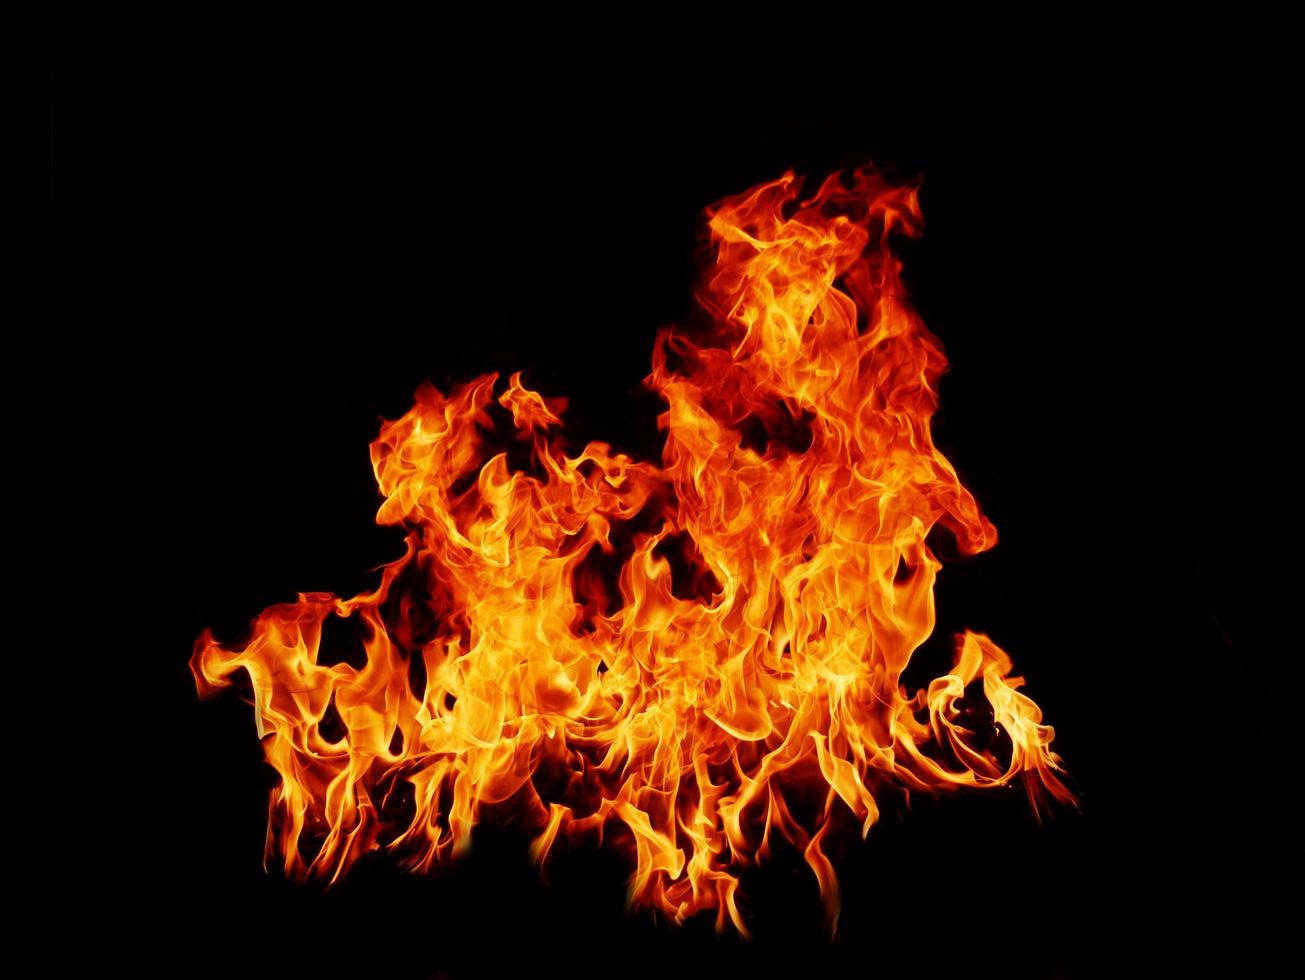 Flamme Flammentextur für seltsame Form Feuerhintergrund Flammenfleisch, das vom Herd oder vom Kochen verbrannt wird. Gefahrengefühl abstrakter schwarzer Hintergrund geeignet für Banner oder Werbung. foto